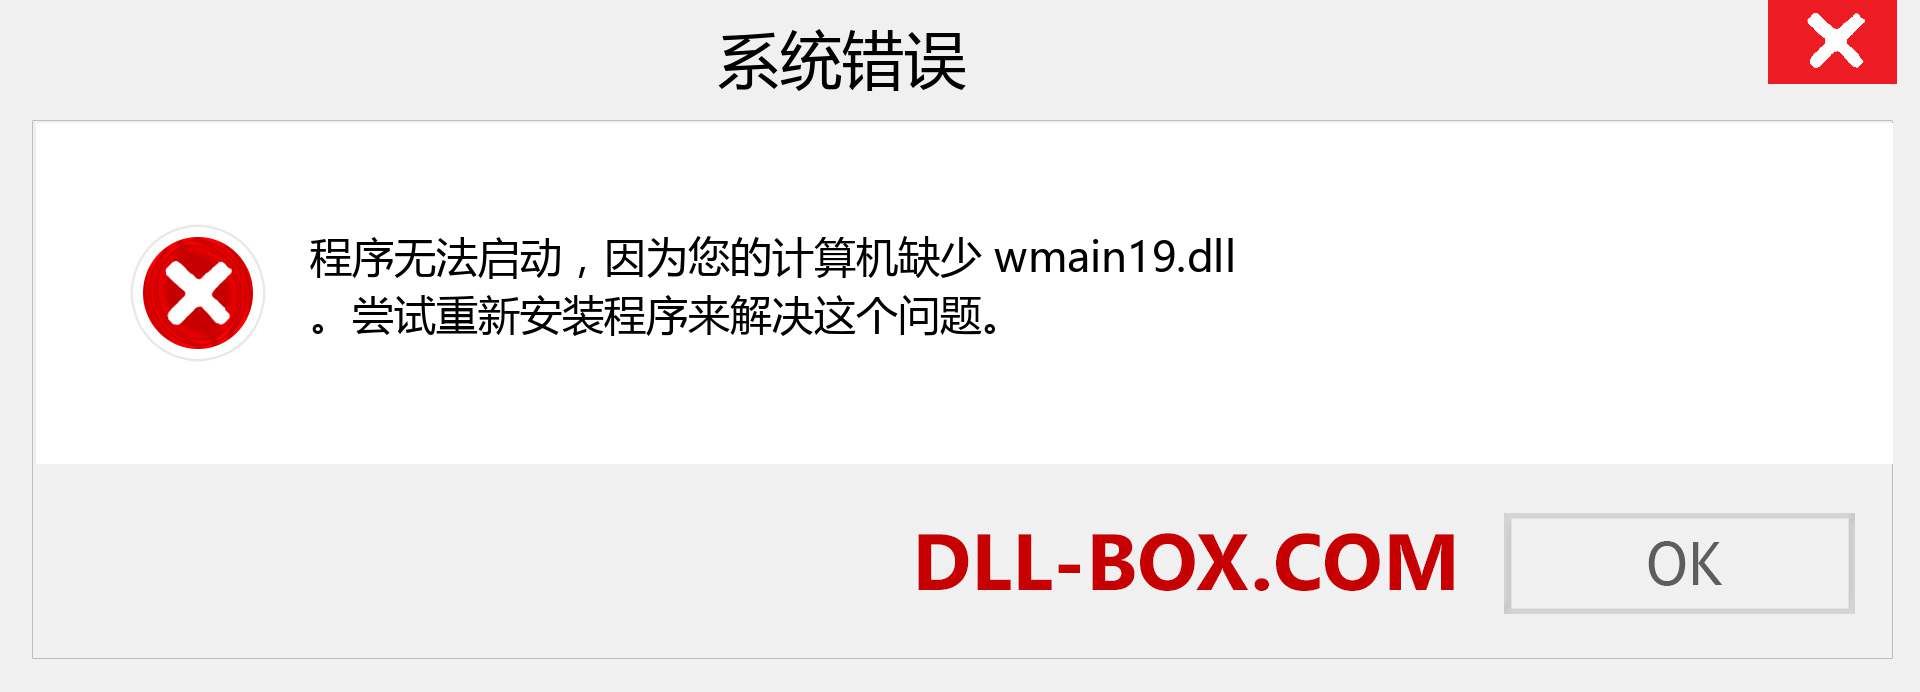 wmain19.dll 文件丢失？。 适用于 Windows 7、8、10 的下载 - 修复 Windows、照片、图像上的 wmain19 dll 丢失错误